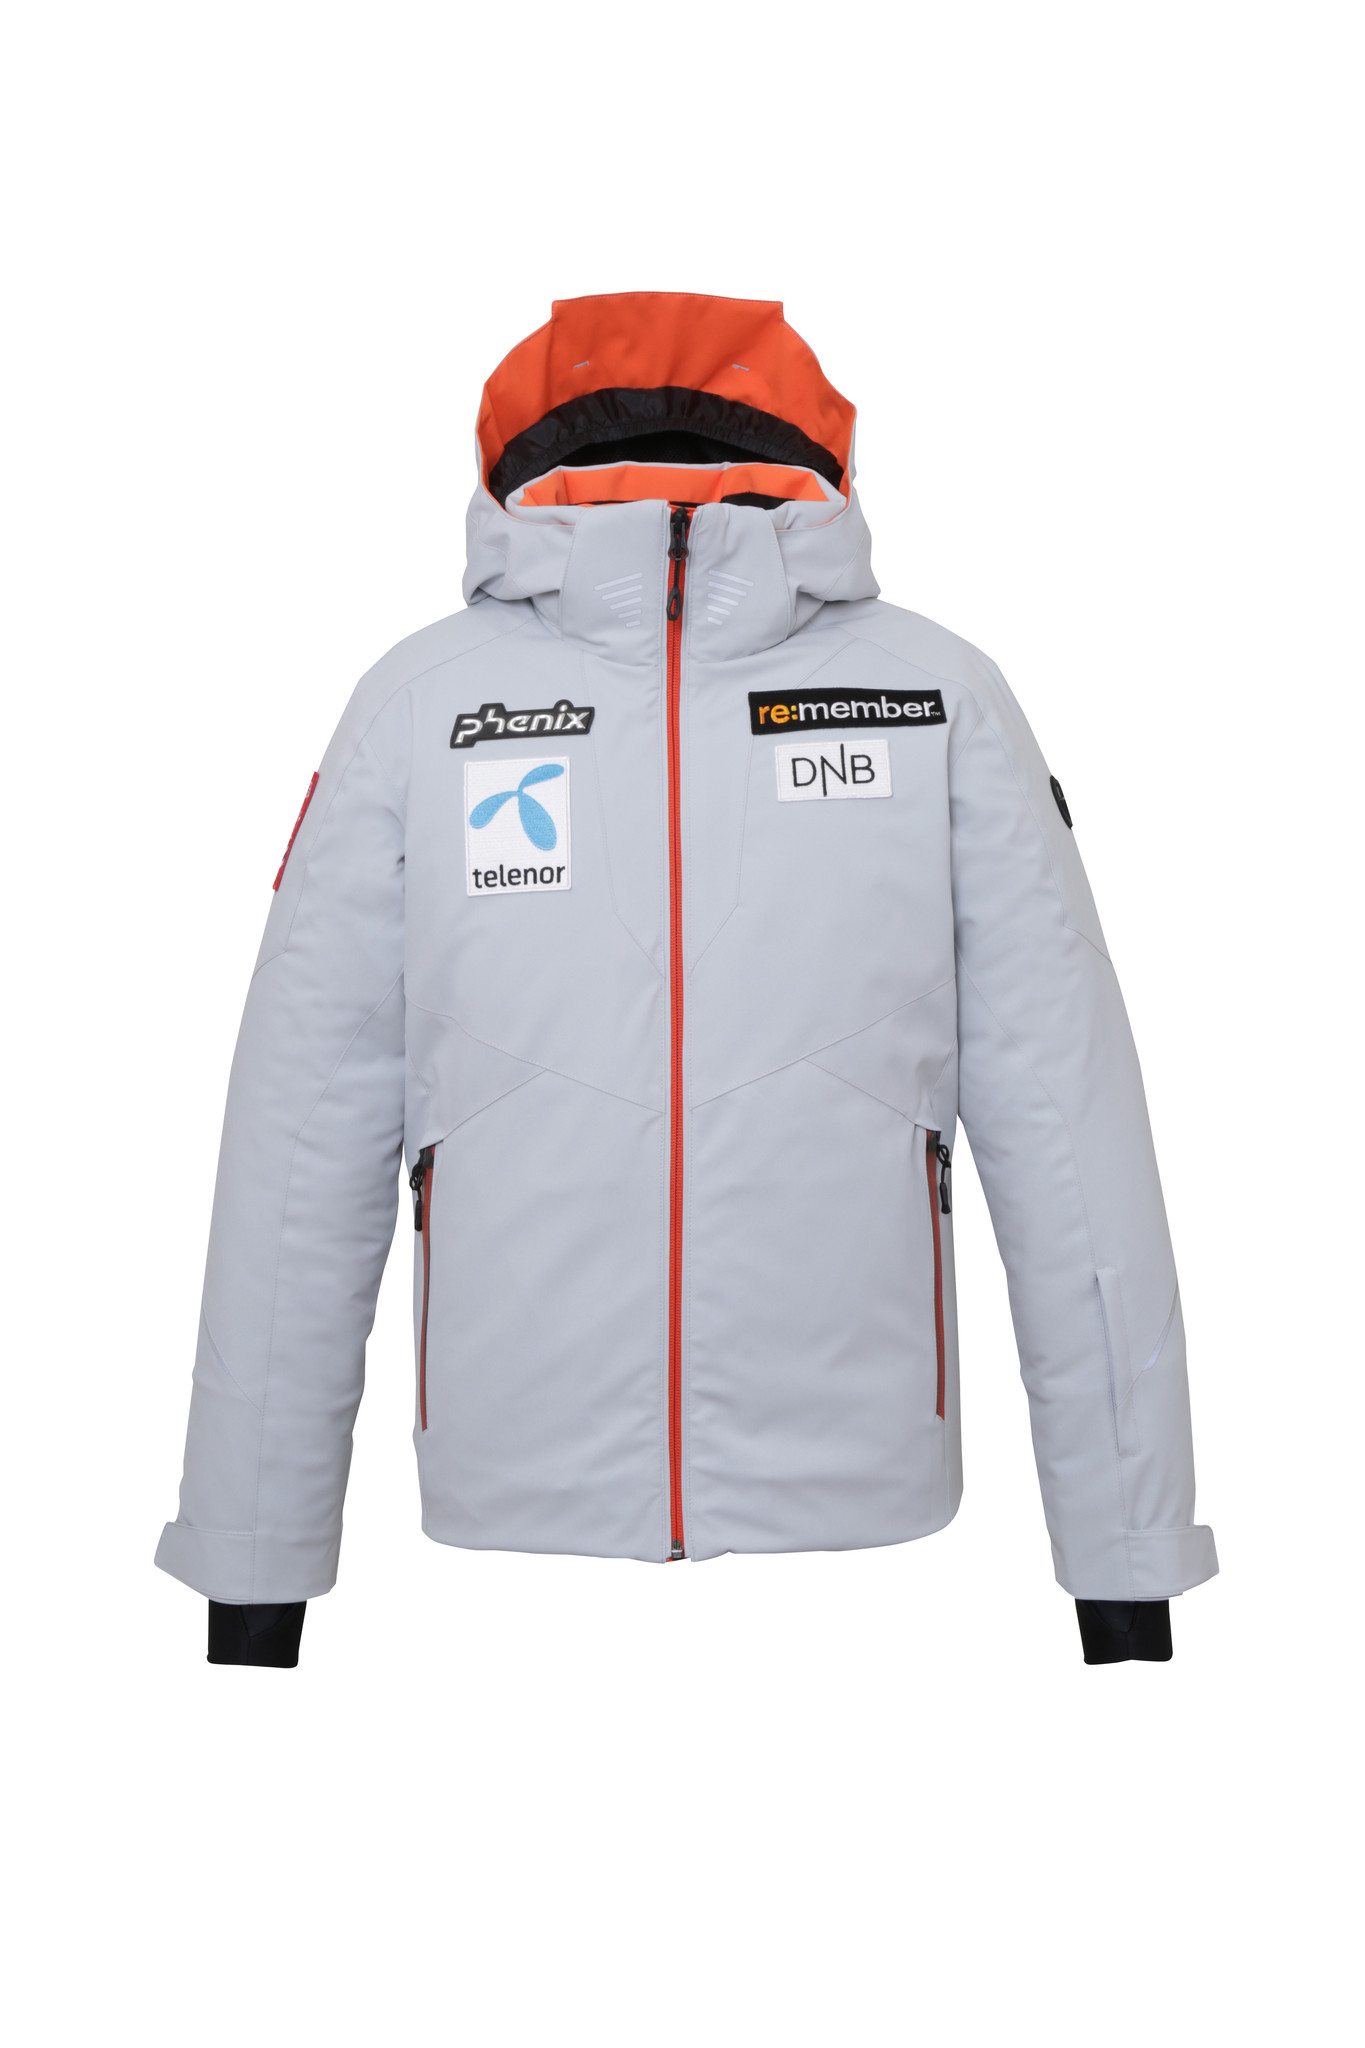 スキー新品タグ付き PHENIX Norway Team フード付きフリース サイズM